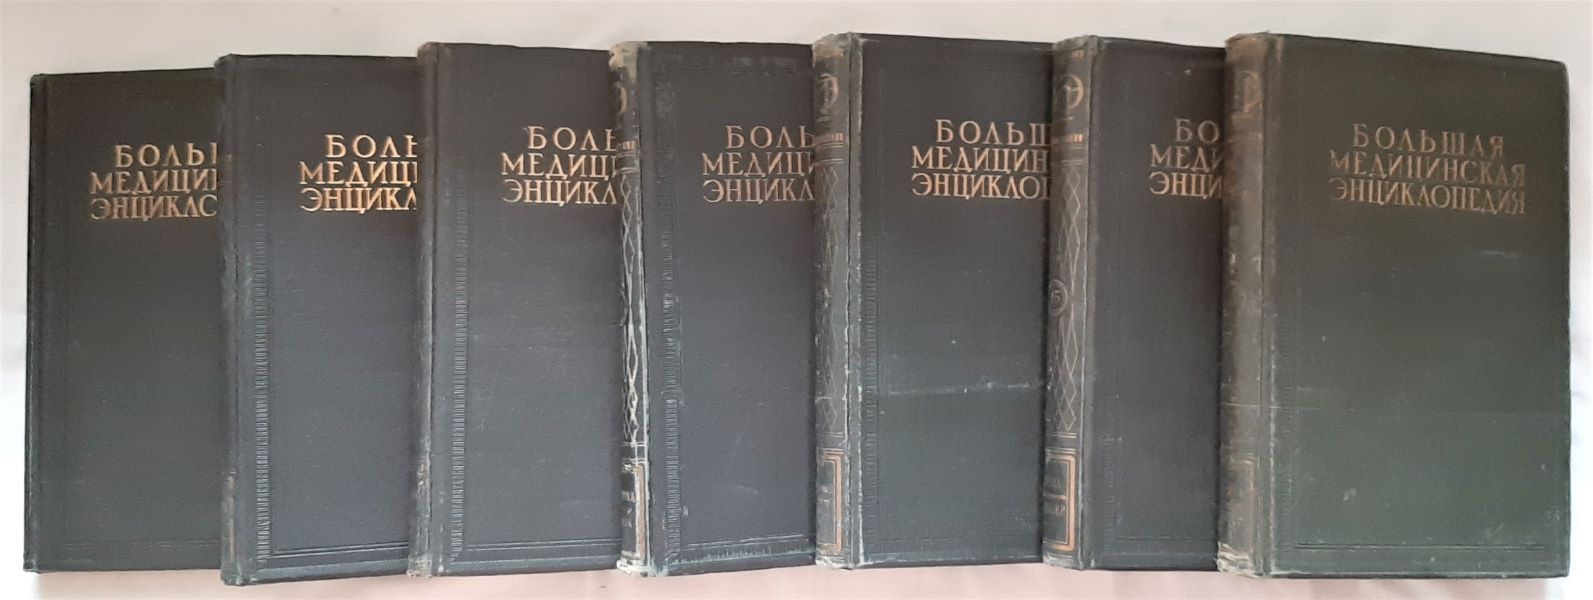 Книги 1928 года